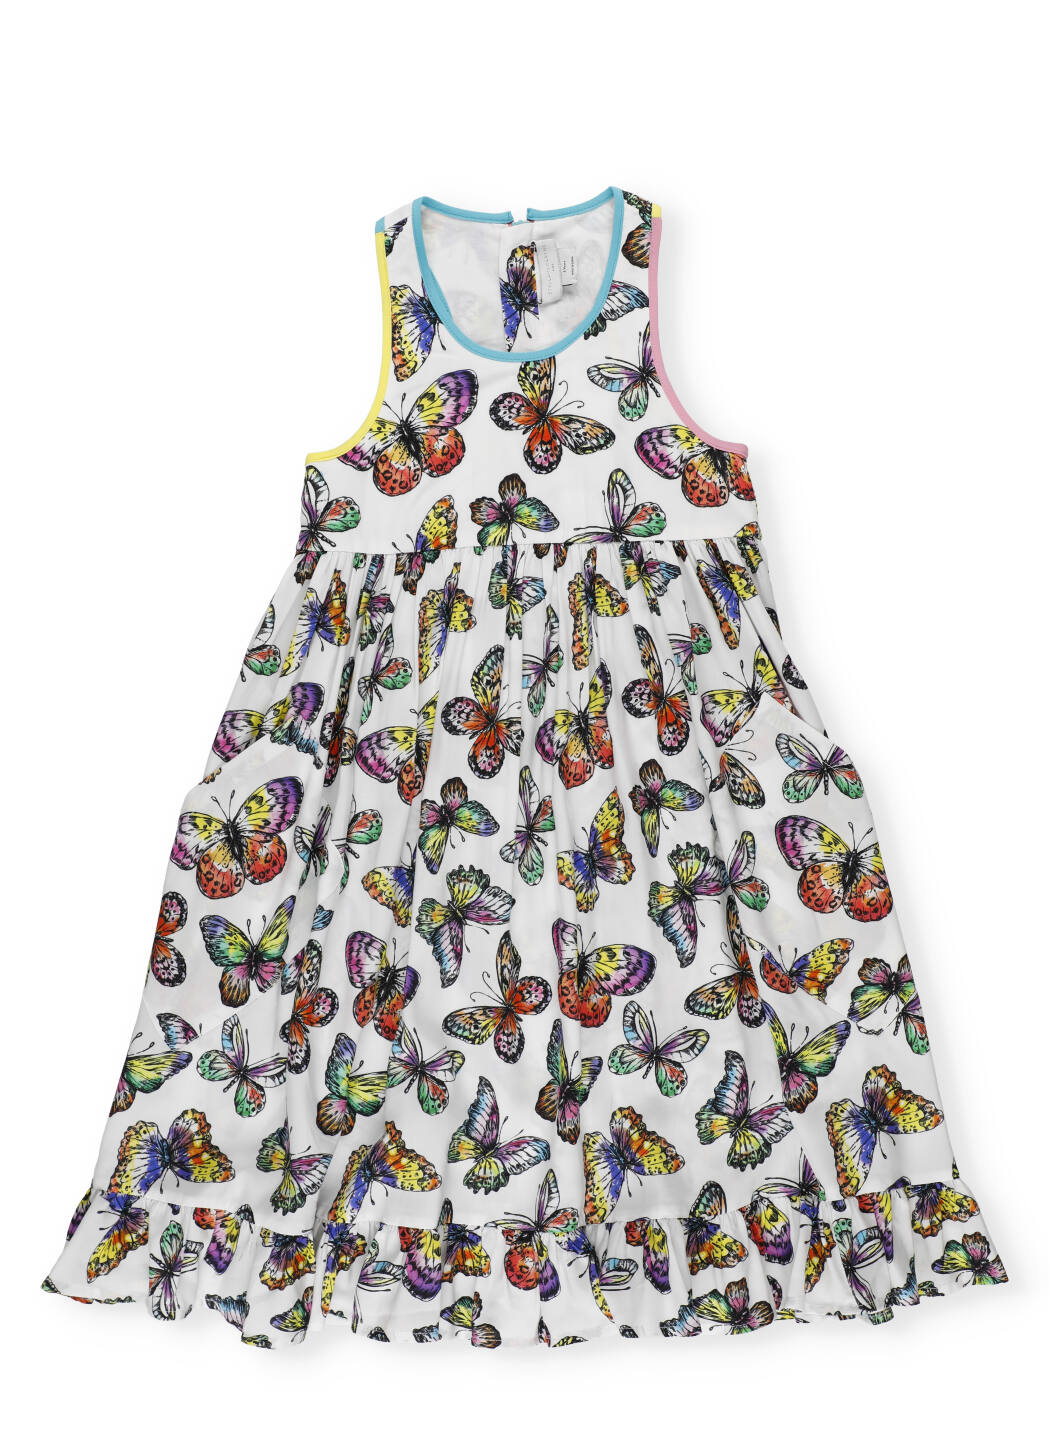 Stella McCartney Dress With Butterflies